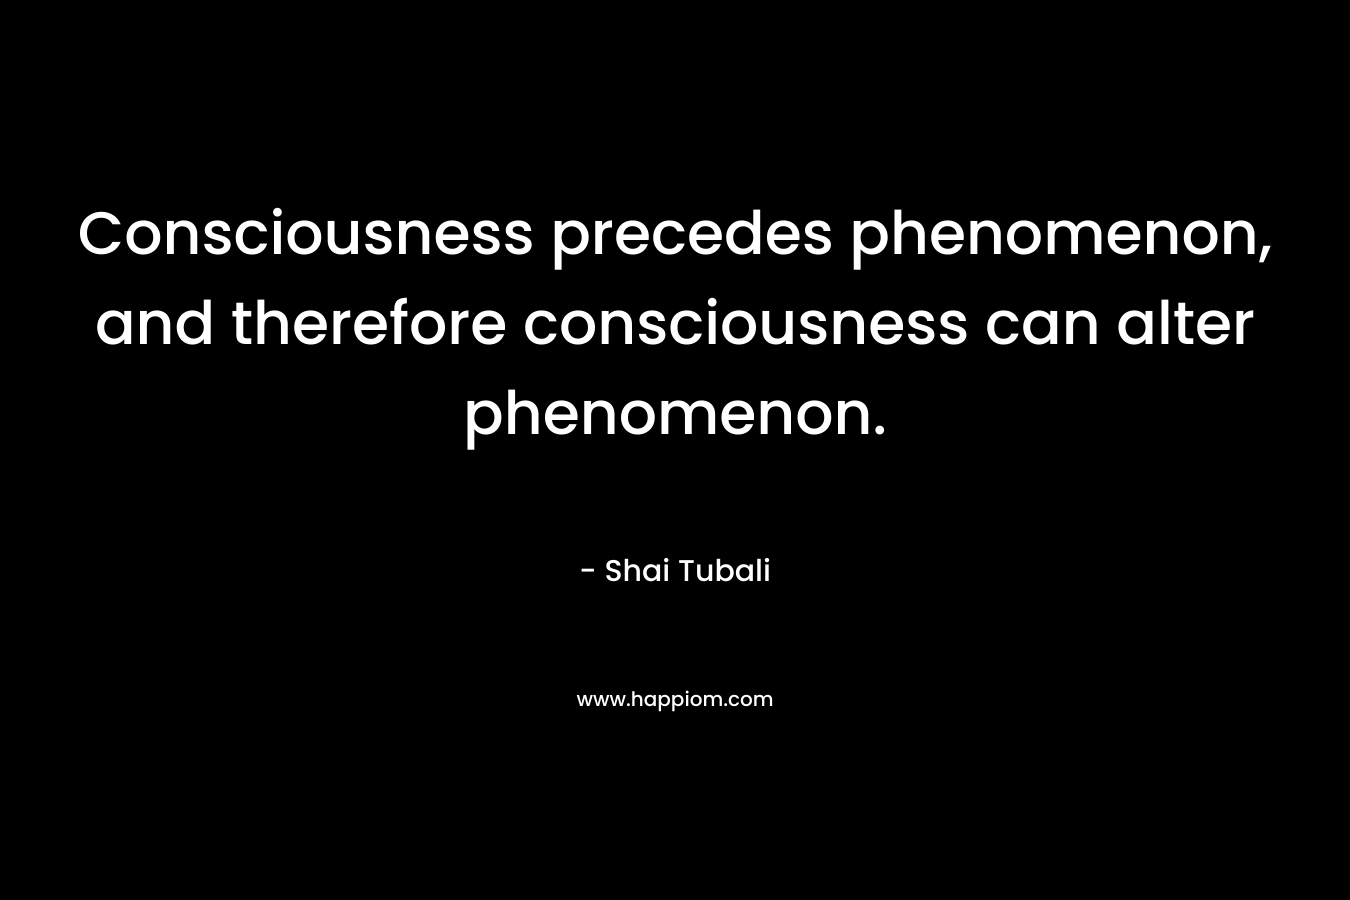 Consciousness precedes phenomenon, and therefore consciousness can alter phenomenon.